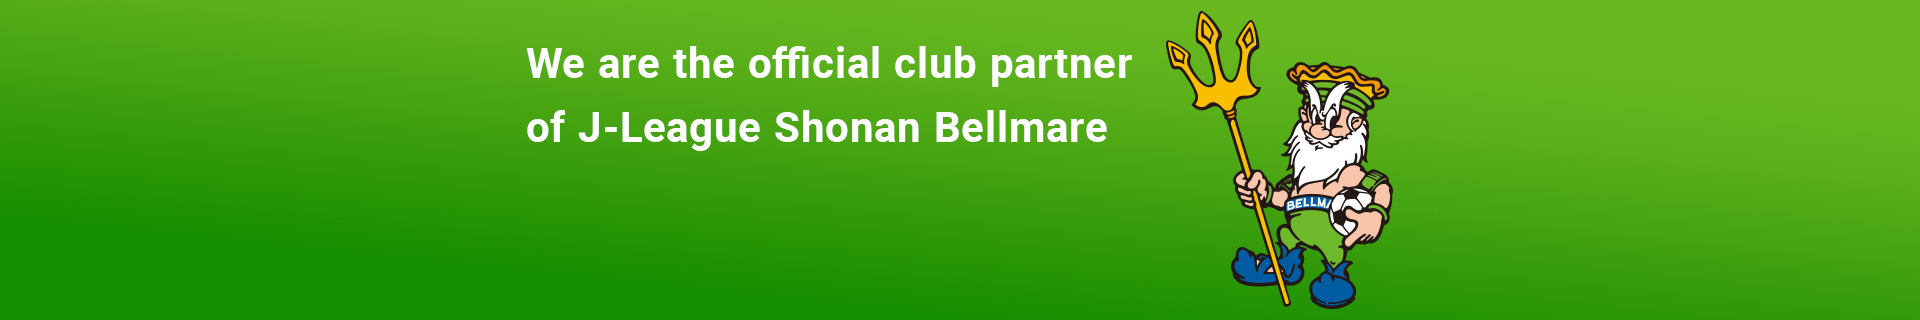 康We are the official club partner of J-League Shonan Bellmare